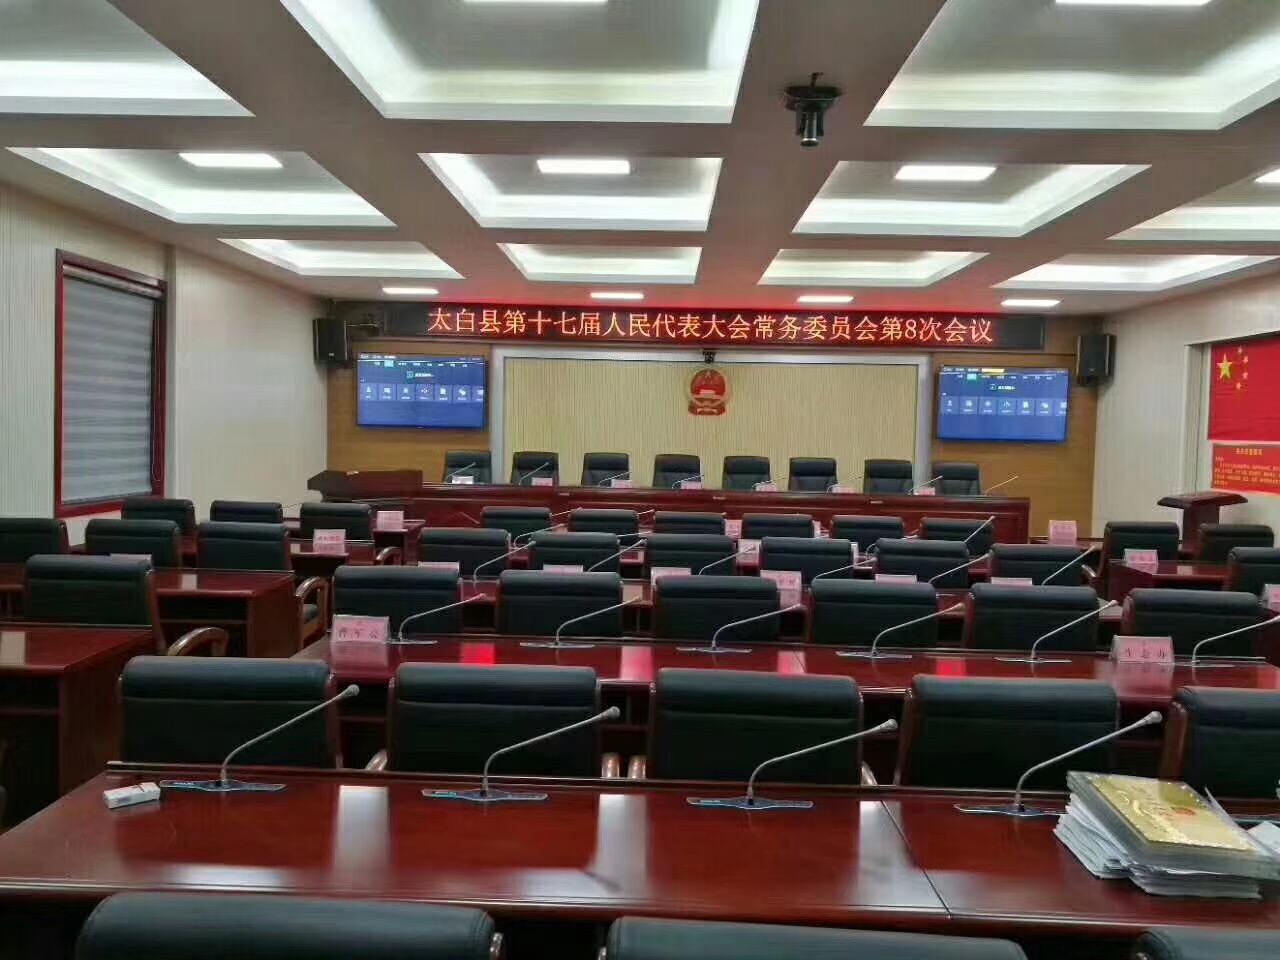 SONB(昇博士)数字会议扩声系统成功助力于宝鸡太白县县政府​